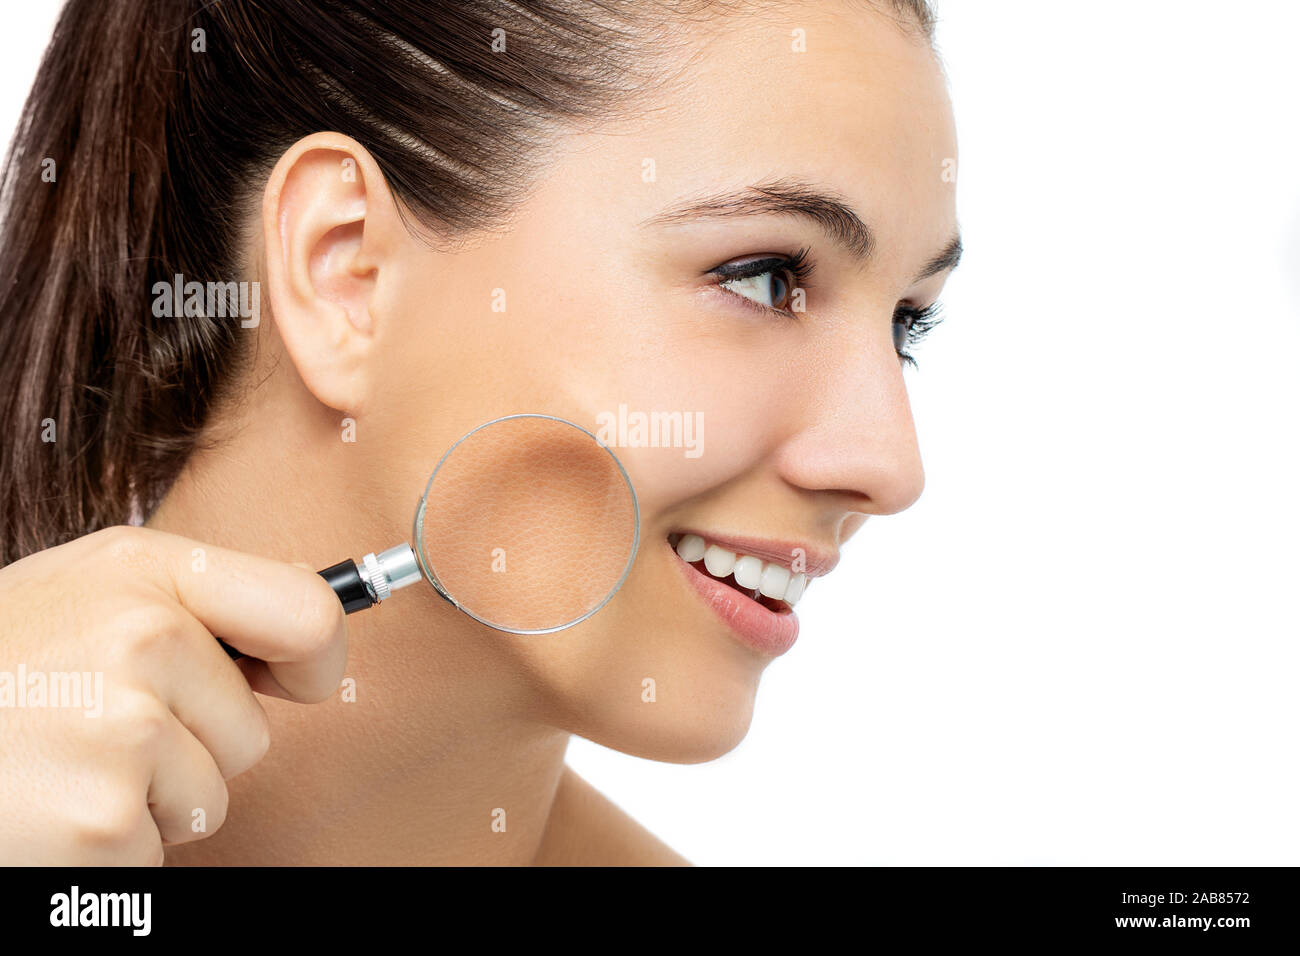 Conceptuel Close up portrait of young woman holding magnifying glass contre joue. Par rapport à la peau rugueuse de la peau lisse sur le visage. Banque D'Images